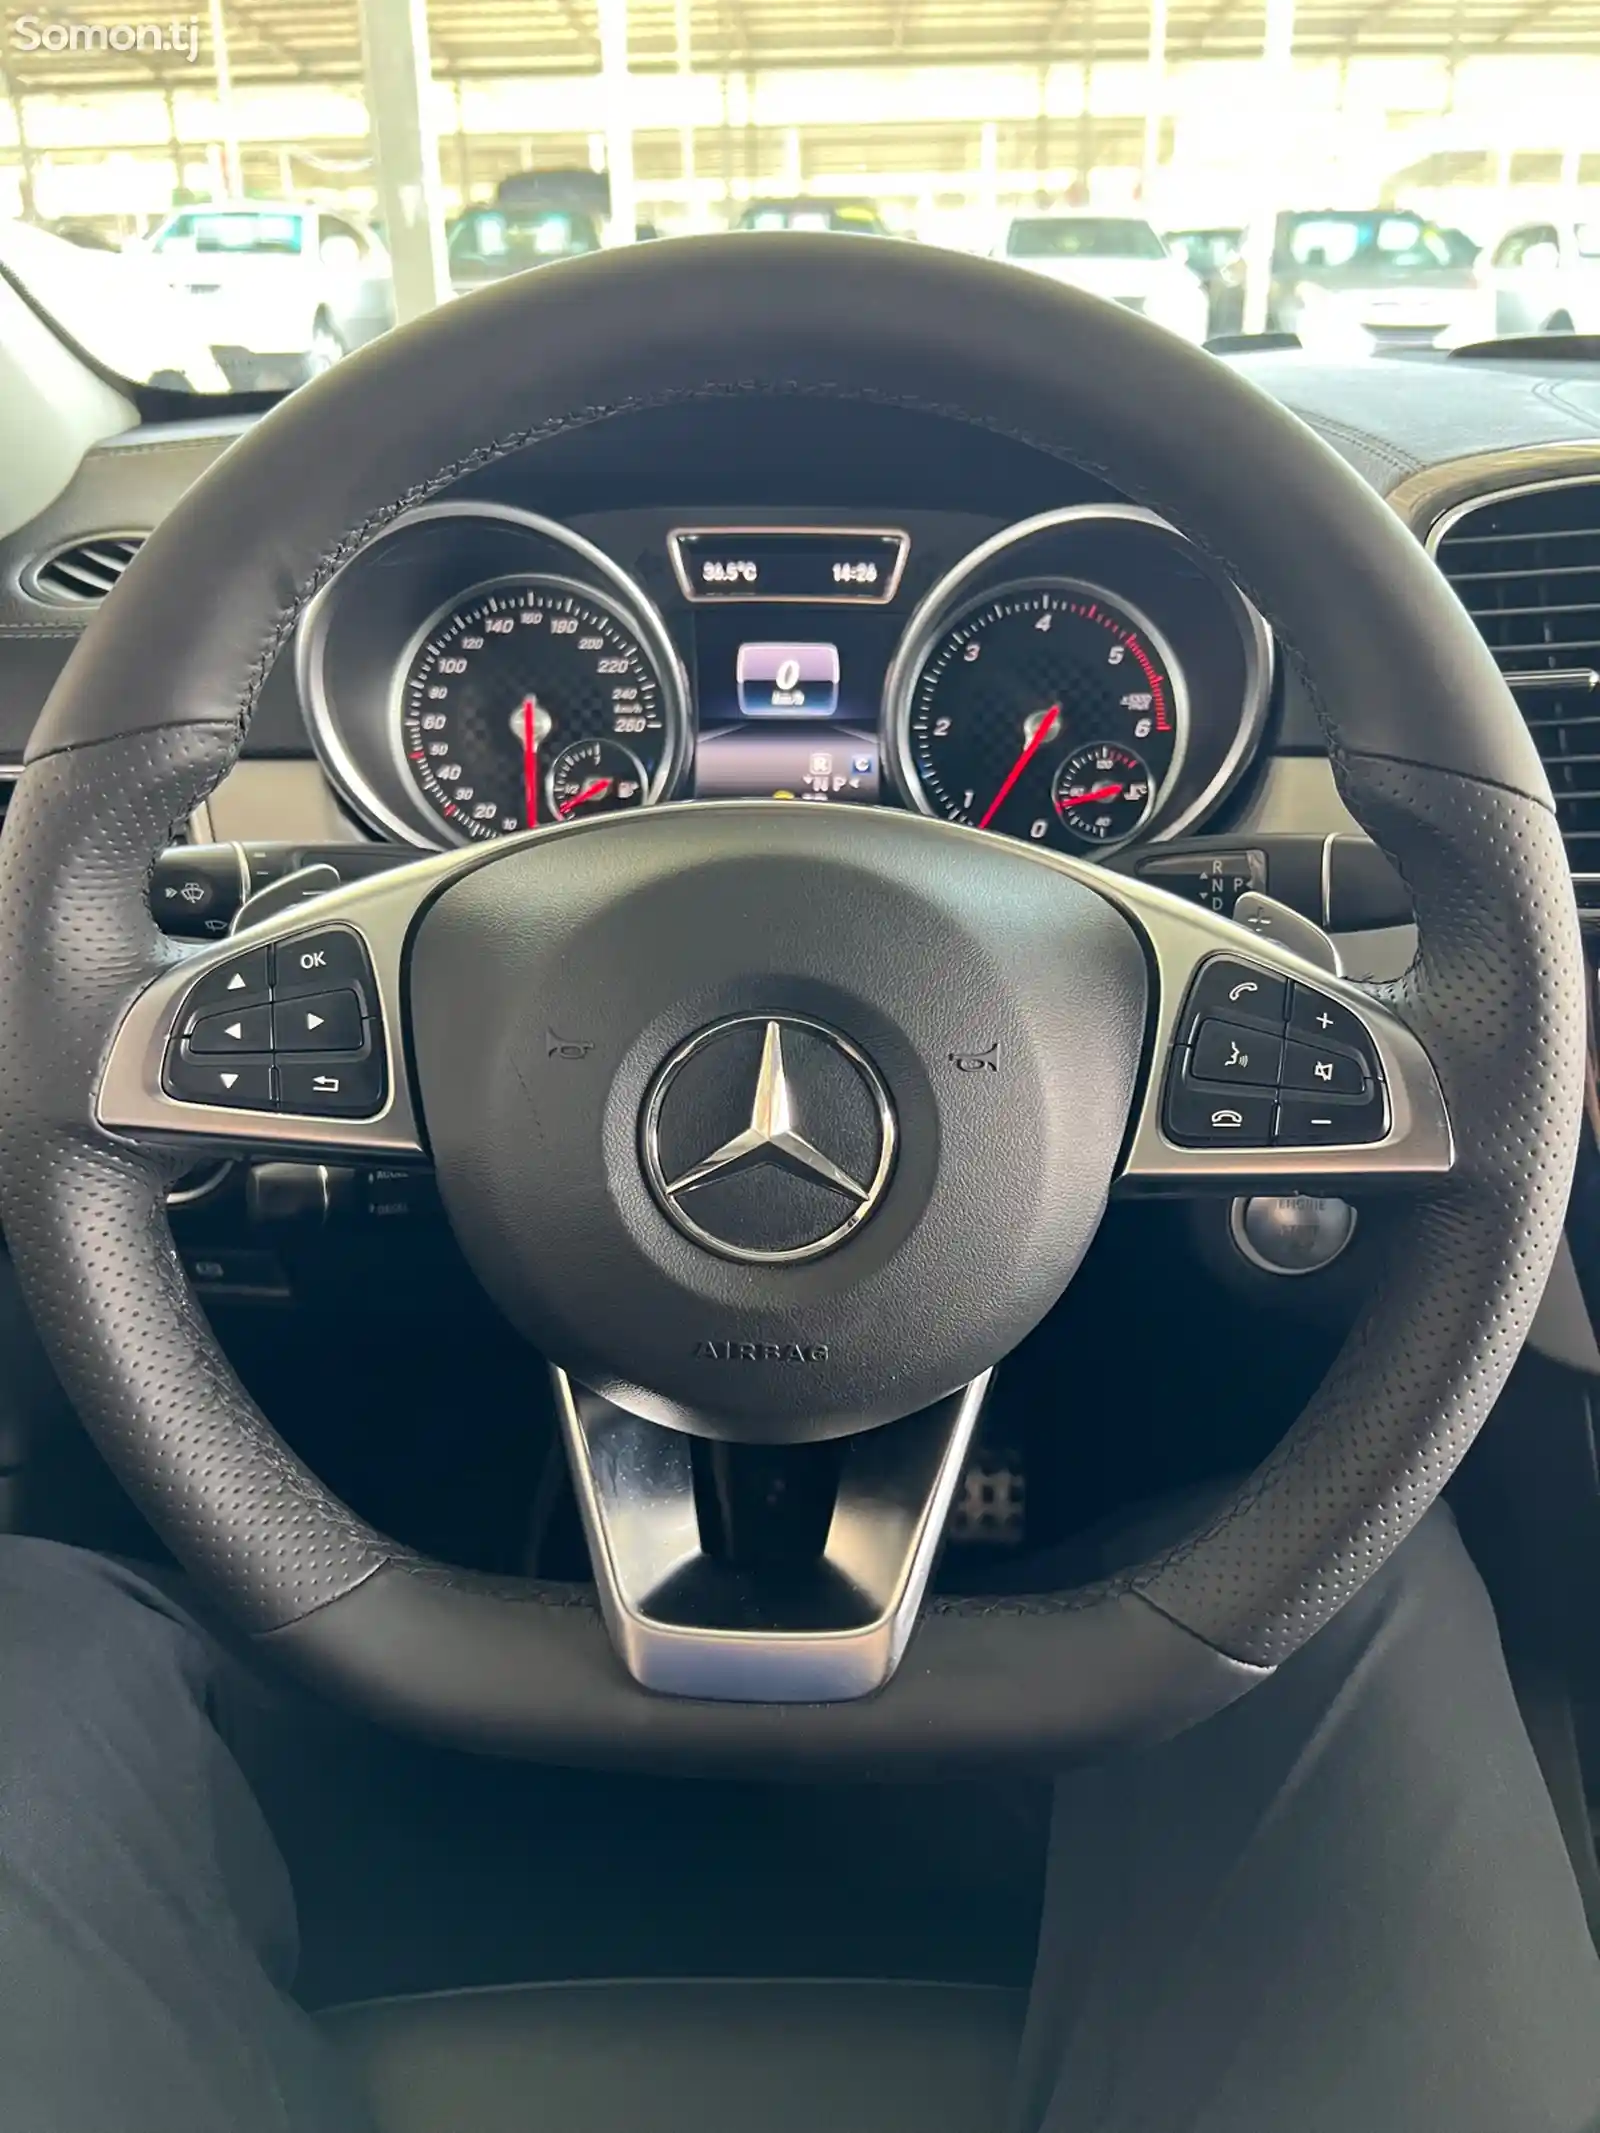 Mercedes-Benz GLE class, 2019-10